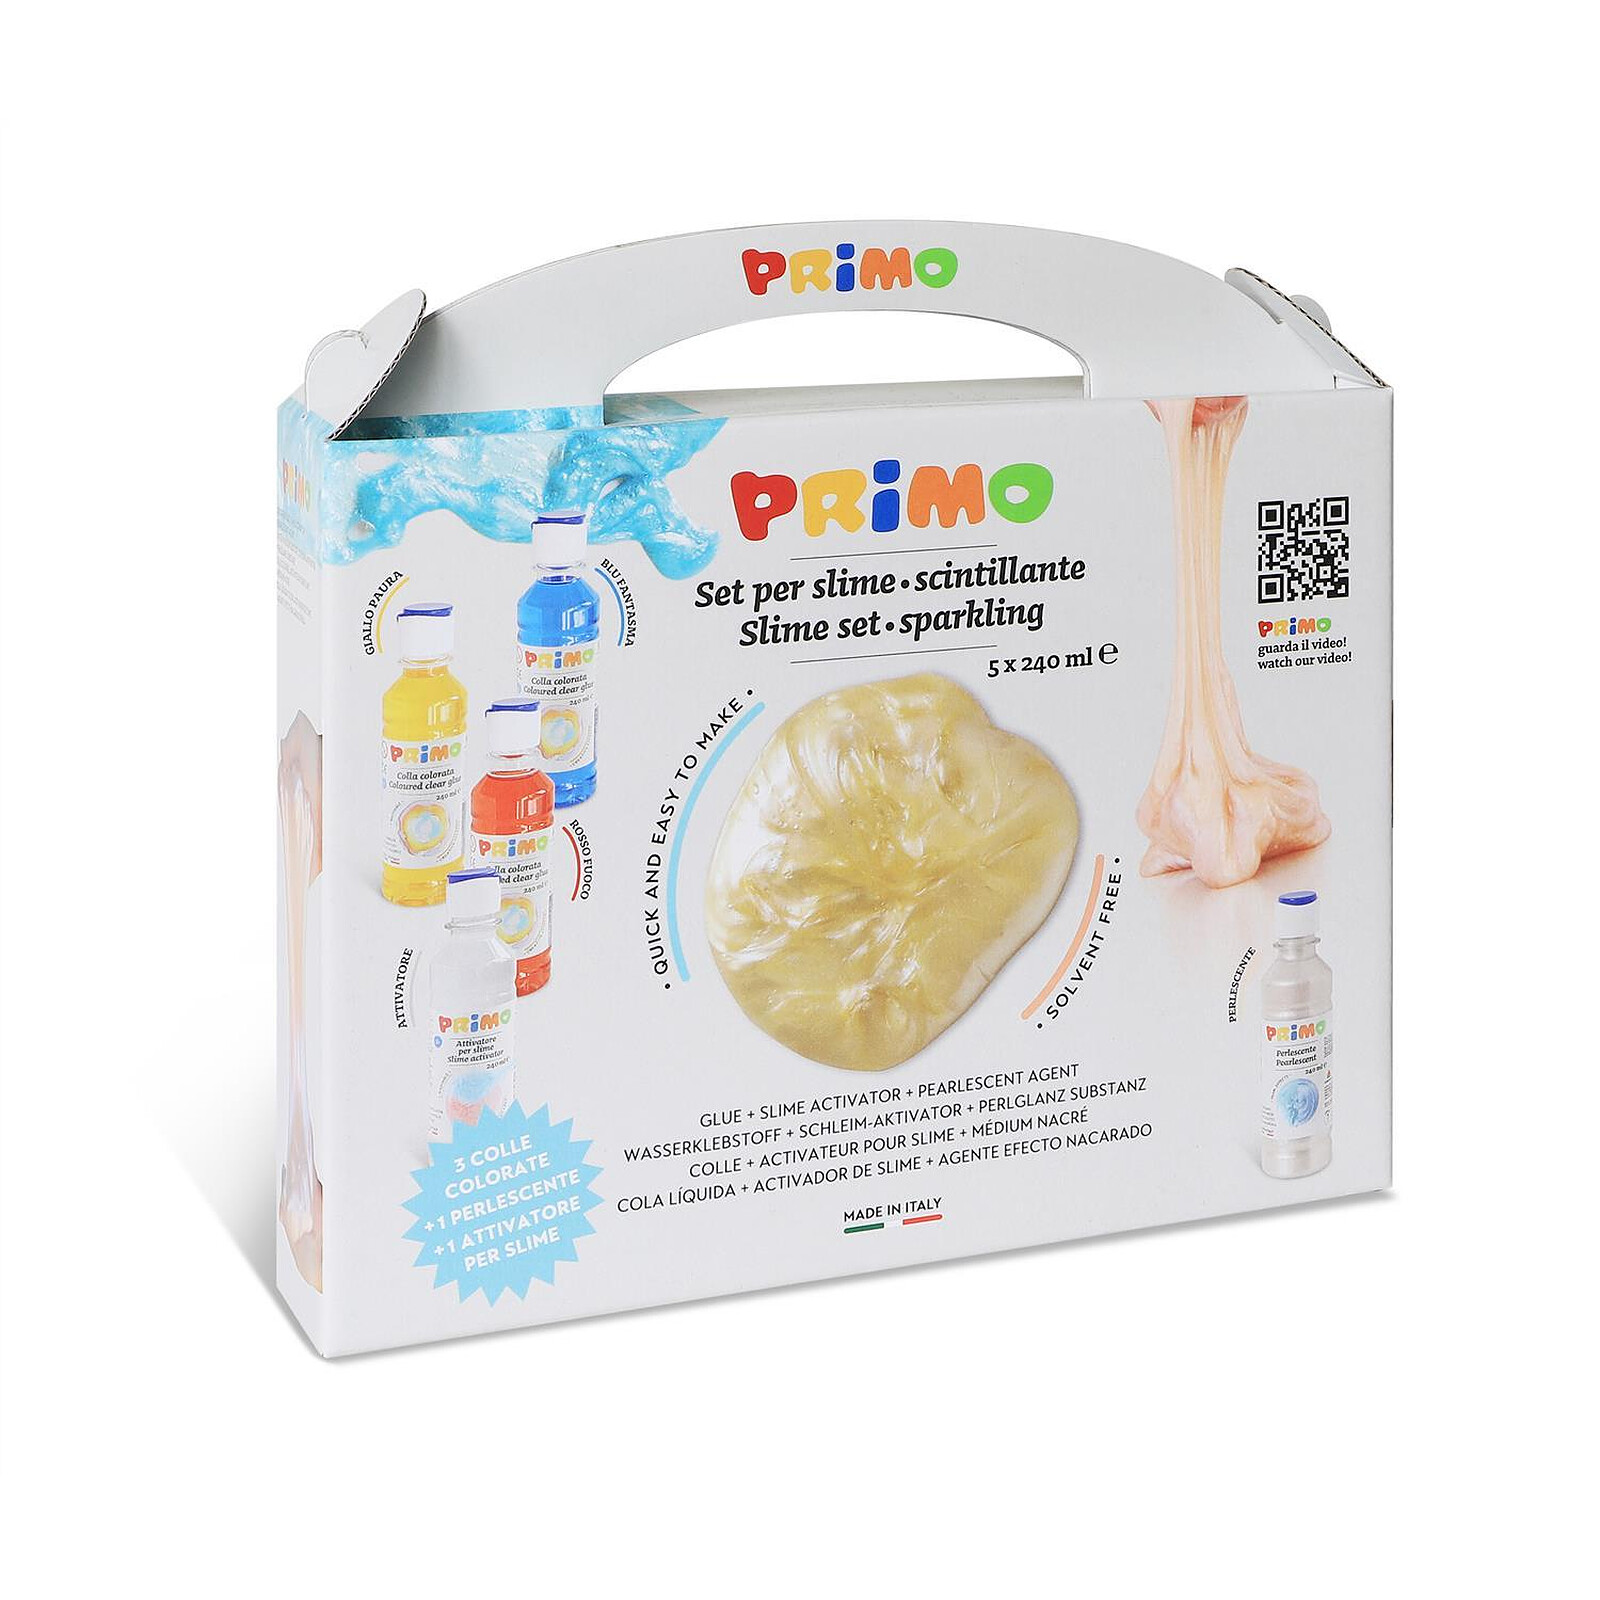 PRIMO Slime-lab Assortiment de 3 colles à l'eau colorées en flacon 240 ml,  1 activateur pour Slime, 1 nacré 240 ml - Ruban adhésif & colle - LDLC